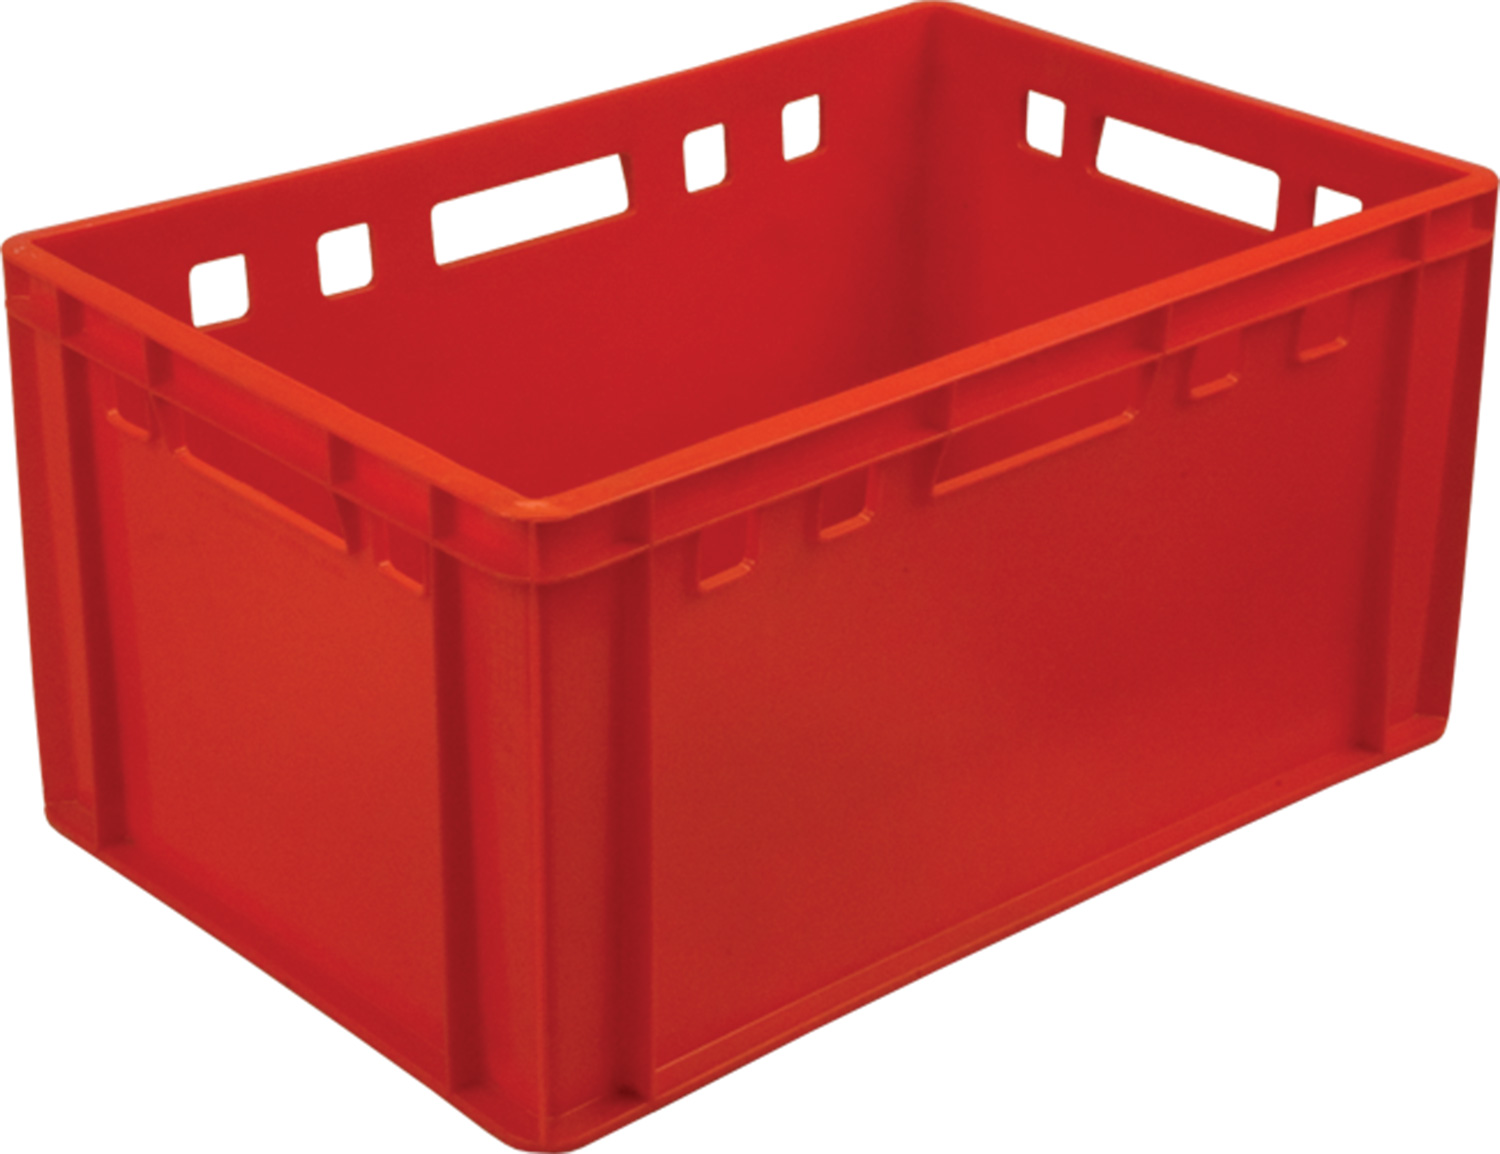 Ящик пищевой мясной 210 размером 600х400х300 мм сплошной Е3 красный евроформат